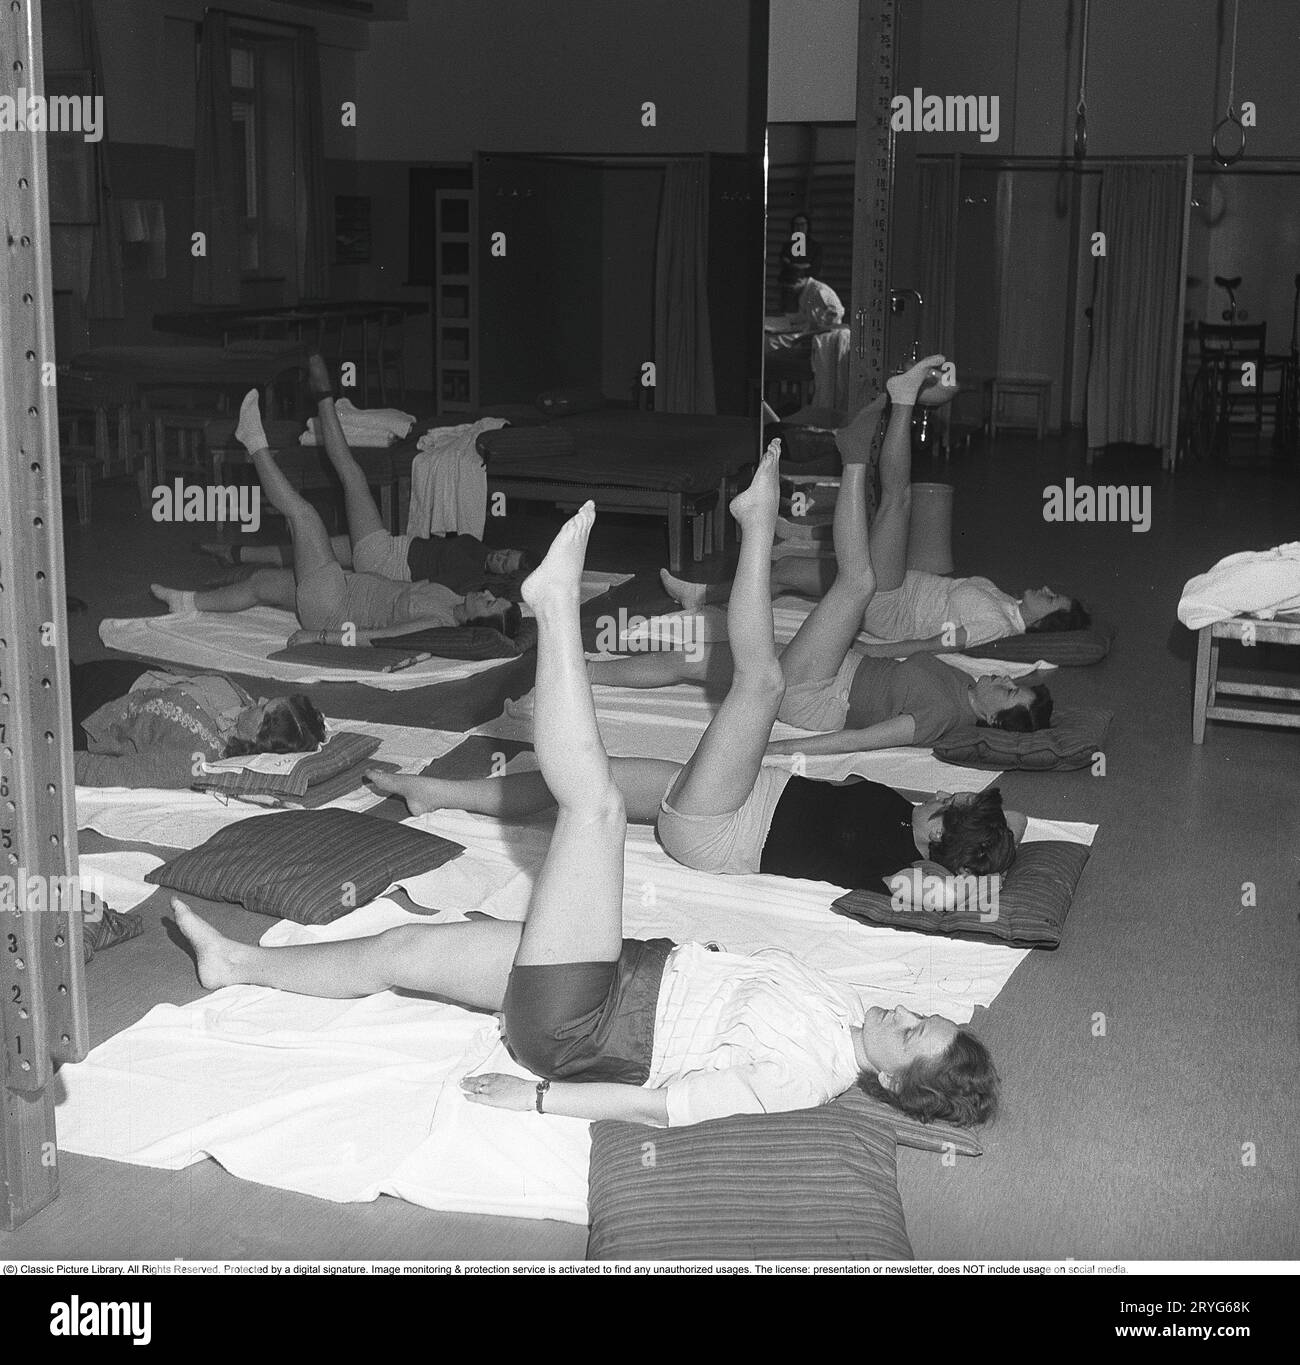 Gymnastik in der Vergangenheit. In einer Turnhalle kniet eine Gruppe von Frauen und streckt ihre Beine in einer Bewegung. Junge Frauen machen eine Pause von der Arbeit und turnen während der Arbeitszeit. Bürogymnastik war eine moderne Erfindung in den 1940er Jahren, als die Gesundheitsfürsorge für Mitarbeiter begann, umgesetzt zu werden. Schweden 1949. Kristoffersson ref AX71-11 Stockfoto